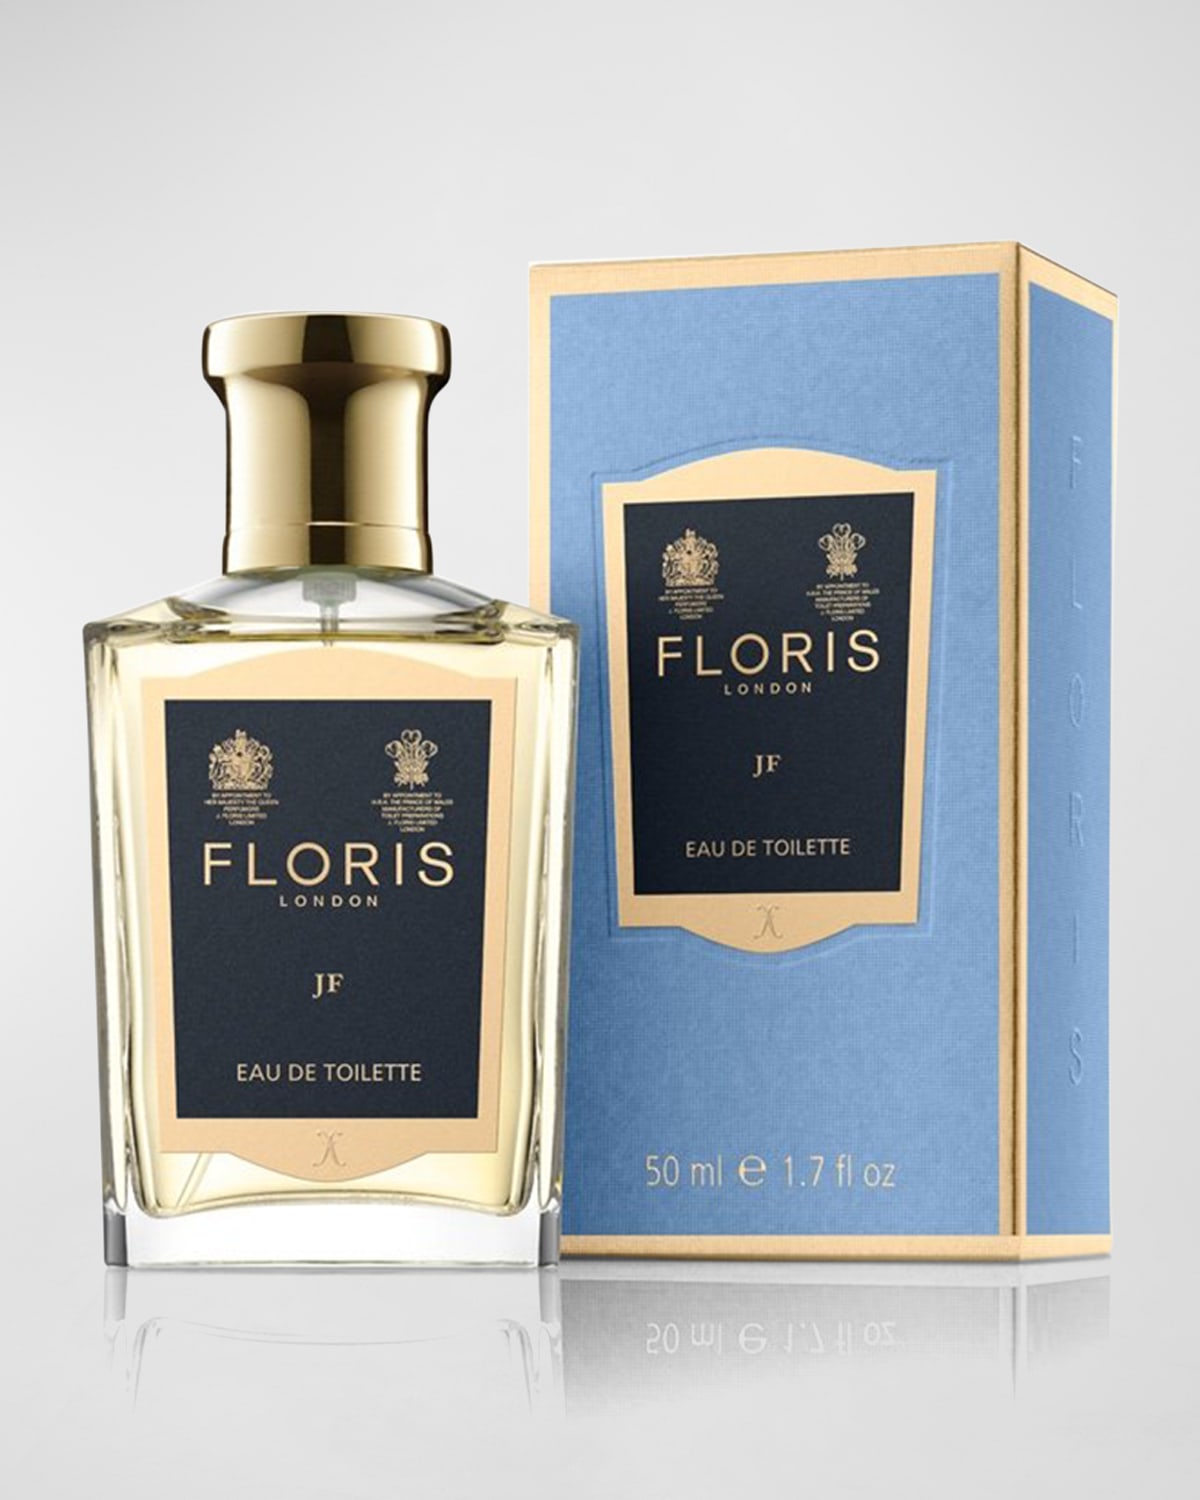 Floris London JF Eau de Toilette, 1.7 oz.